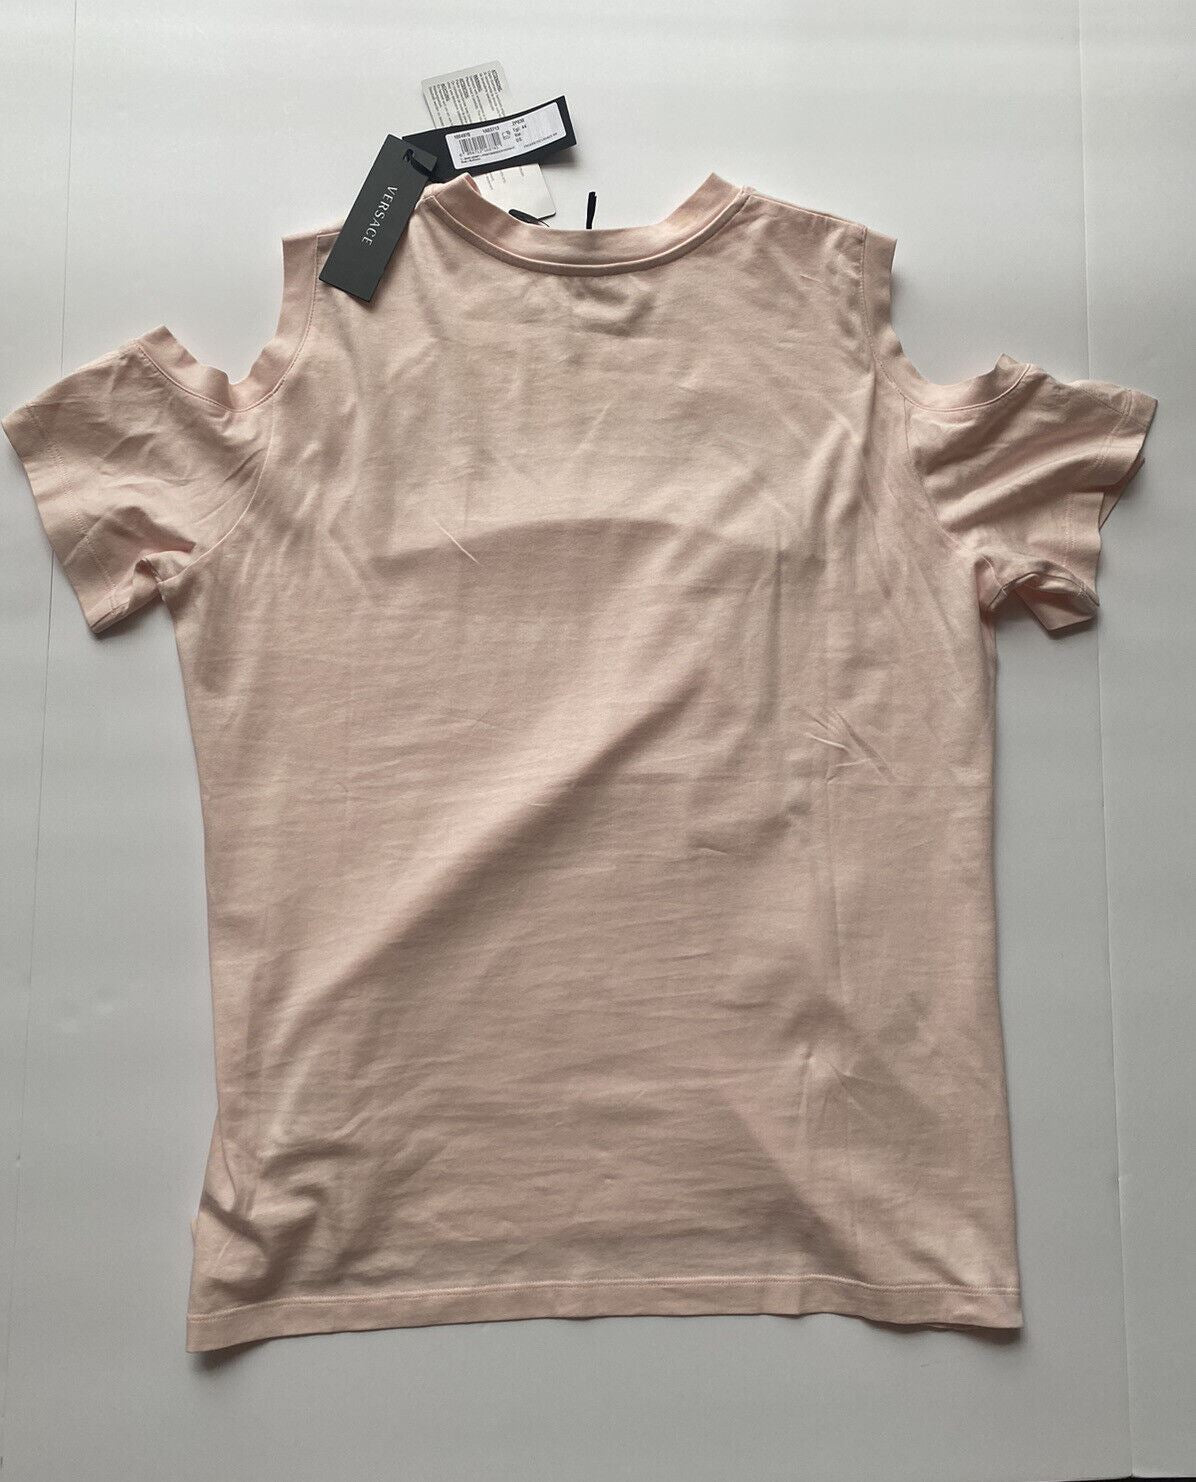 Neu mit Etikett: Versace Damen-T-Shirt aus Jersey mit Stickerei-Logo und Rose, 10 US (44 Euro) 1004970